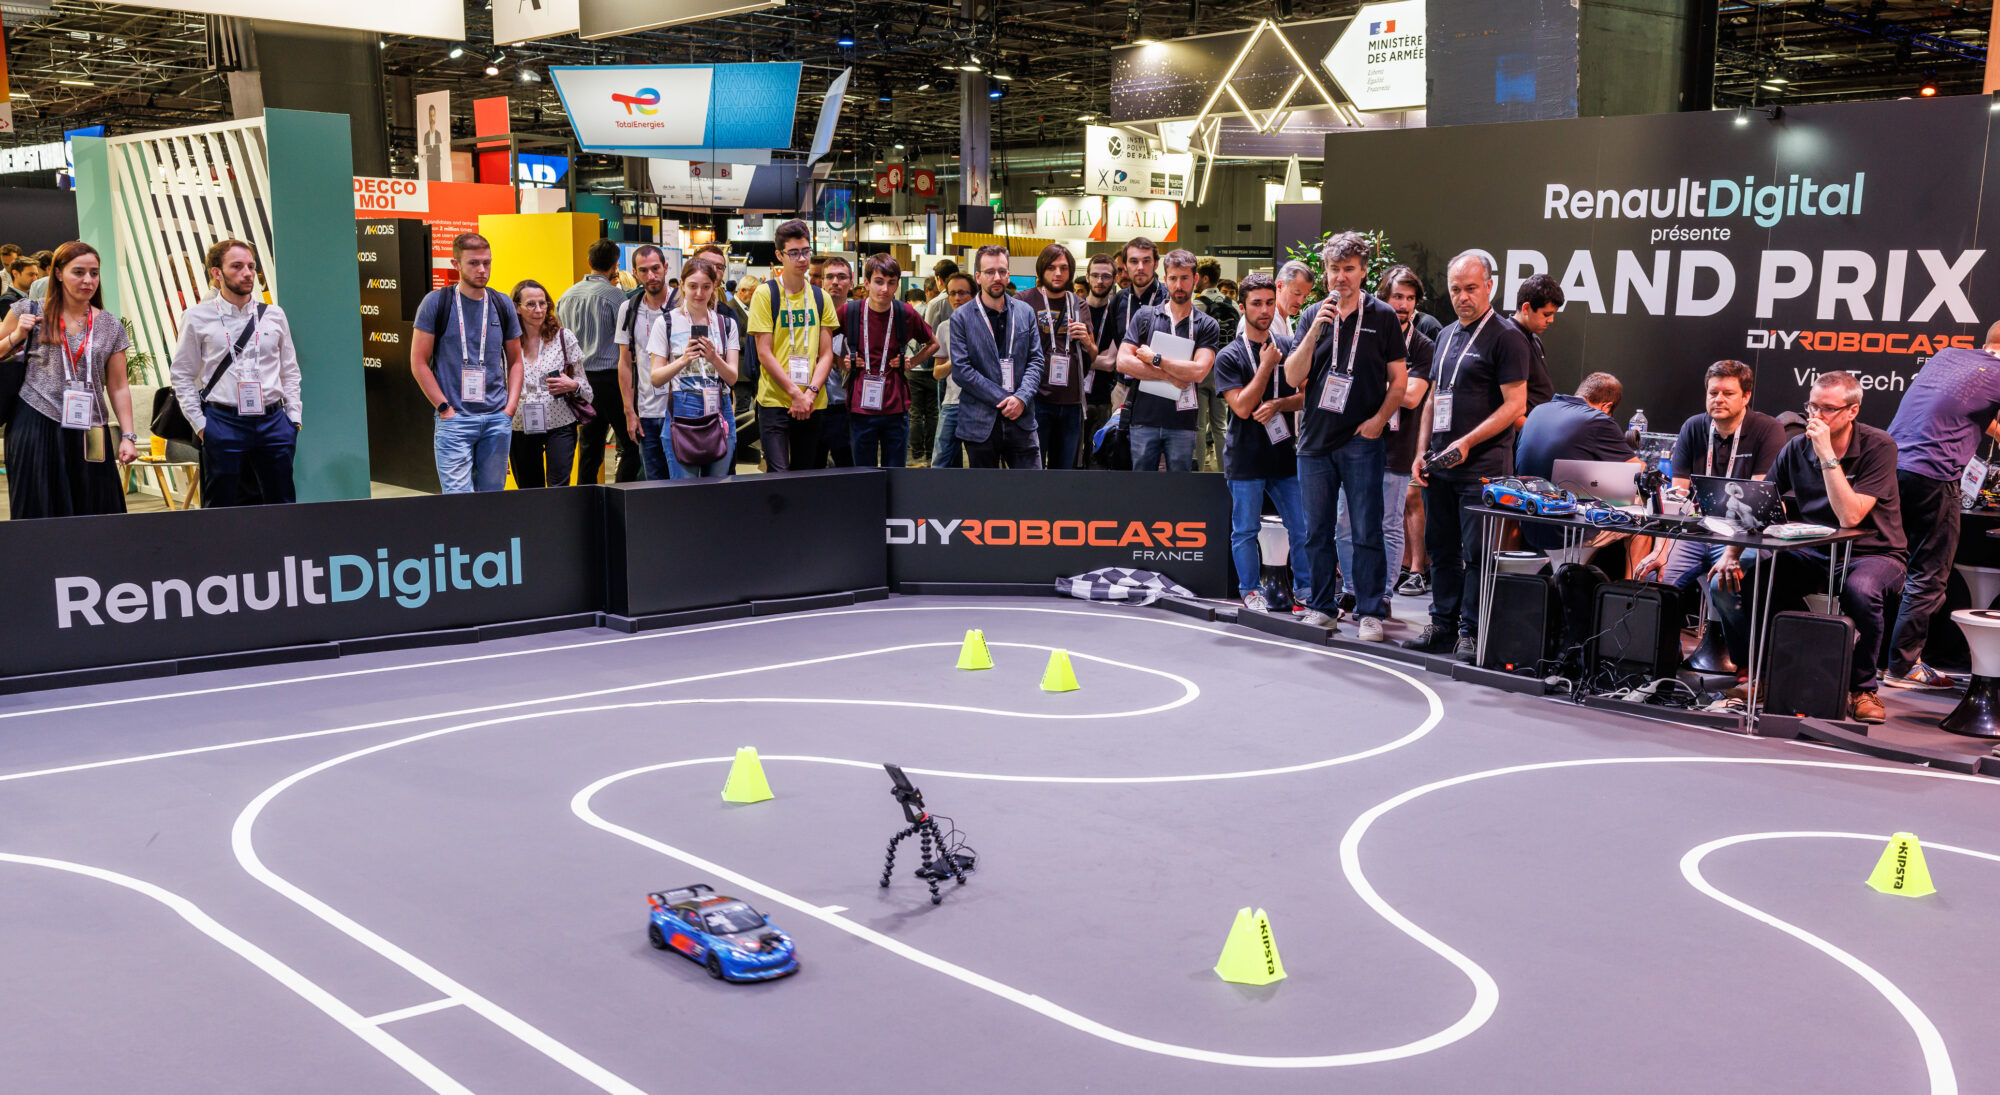 2022 - Story Robocars  le Grand Prix de voitures autonomes qui a anim VivaTech 2022 (4).jpg